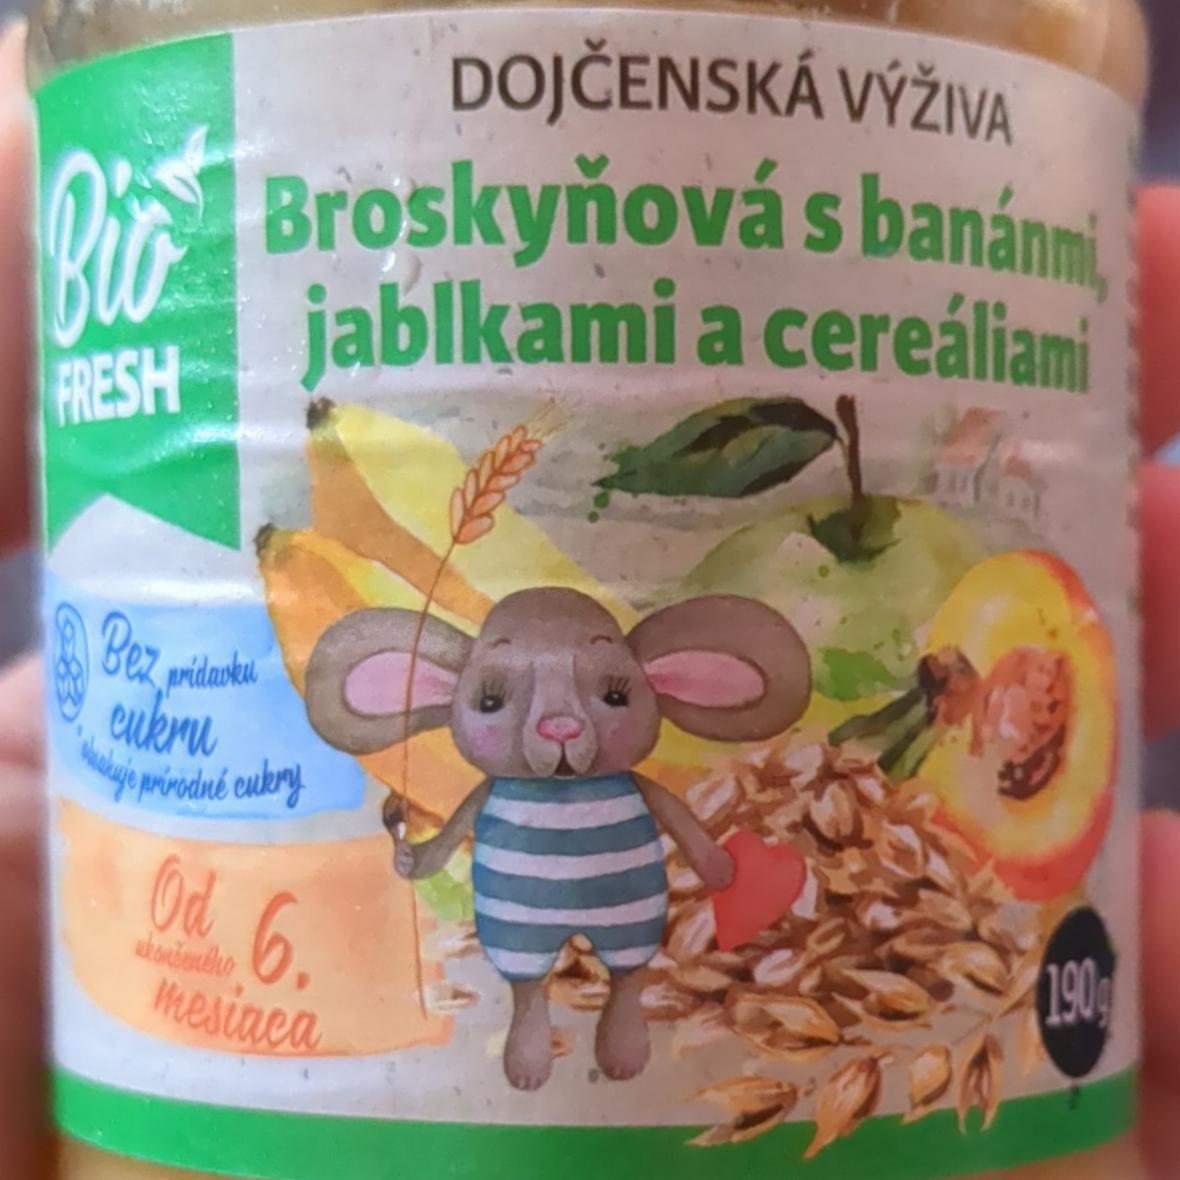 Fotografie - Dojčenská výživa Broskyňová s banánmi, jablkami a cereáliami Bio Fresh